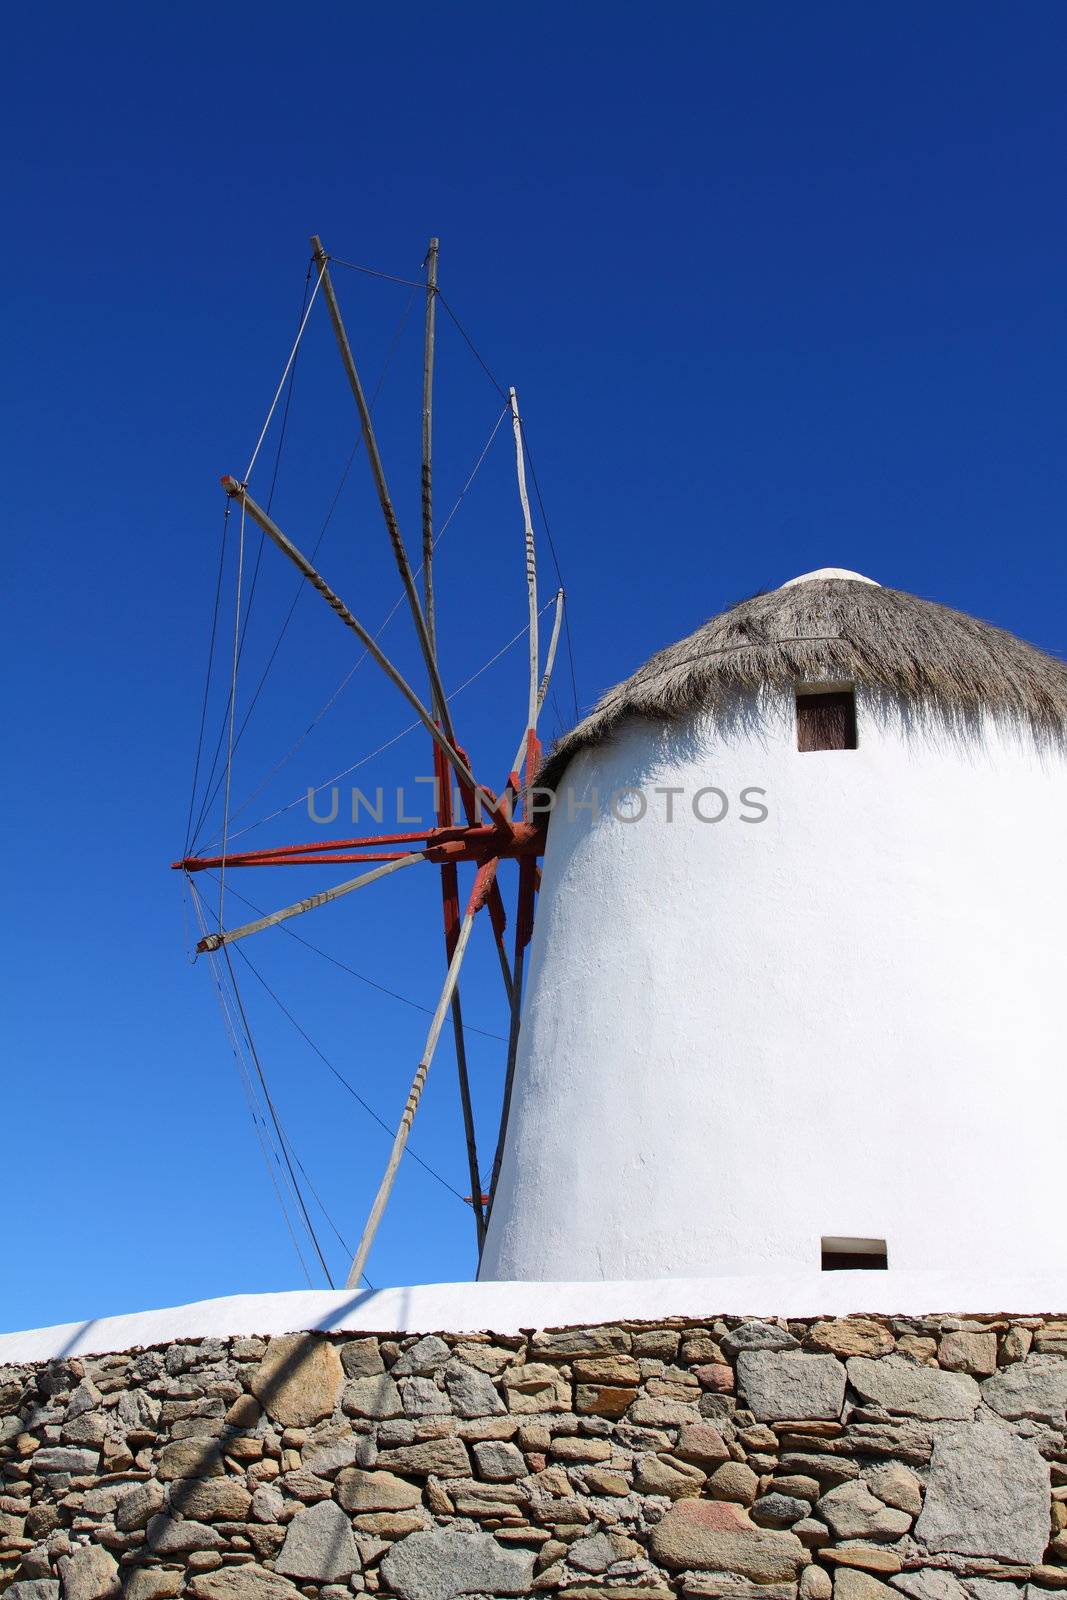 Windmills of sunny Mykonos (Greece, Cyclades)  by mariusz_prusaczyk